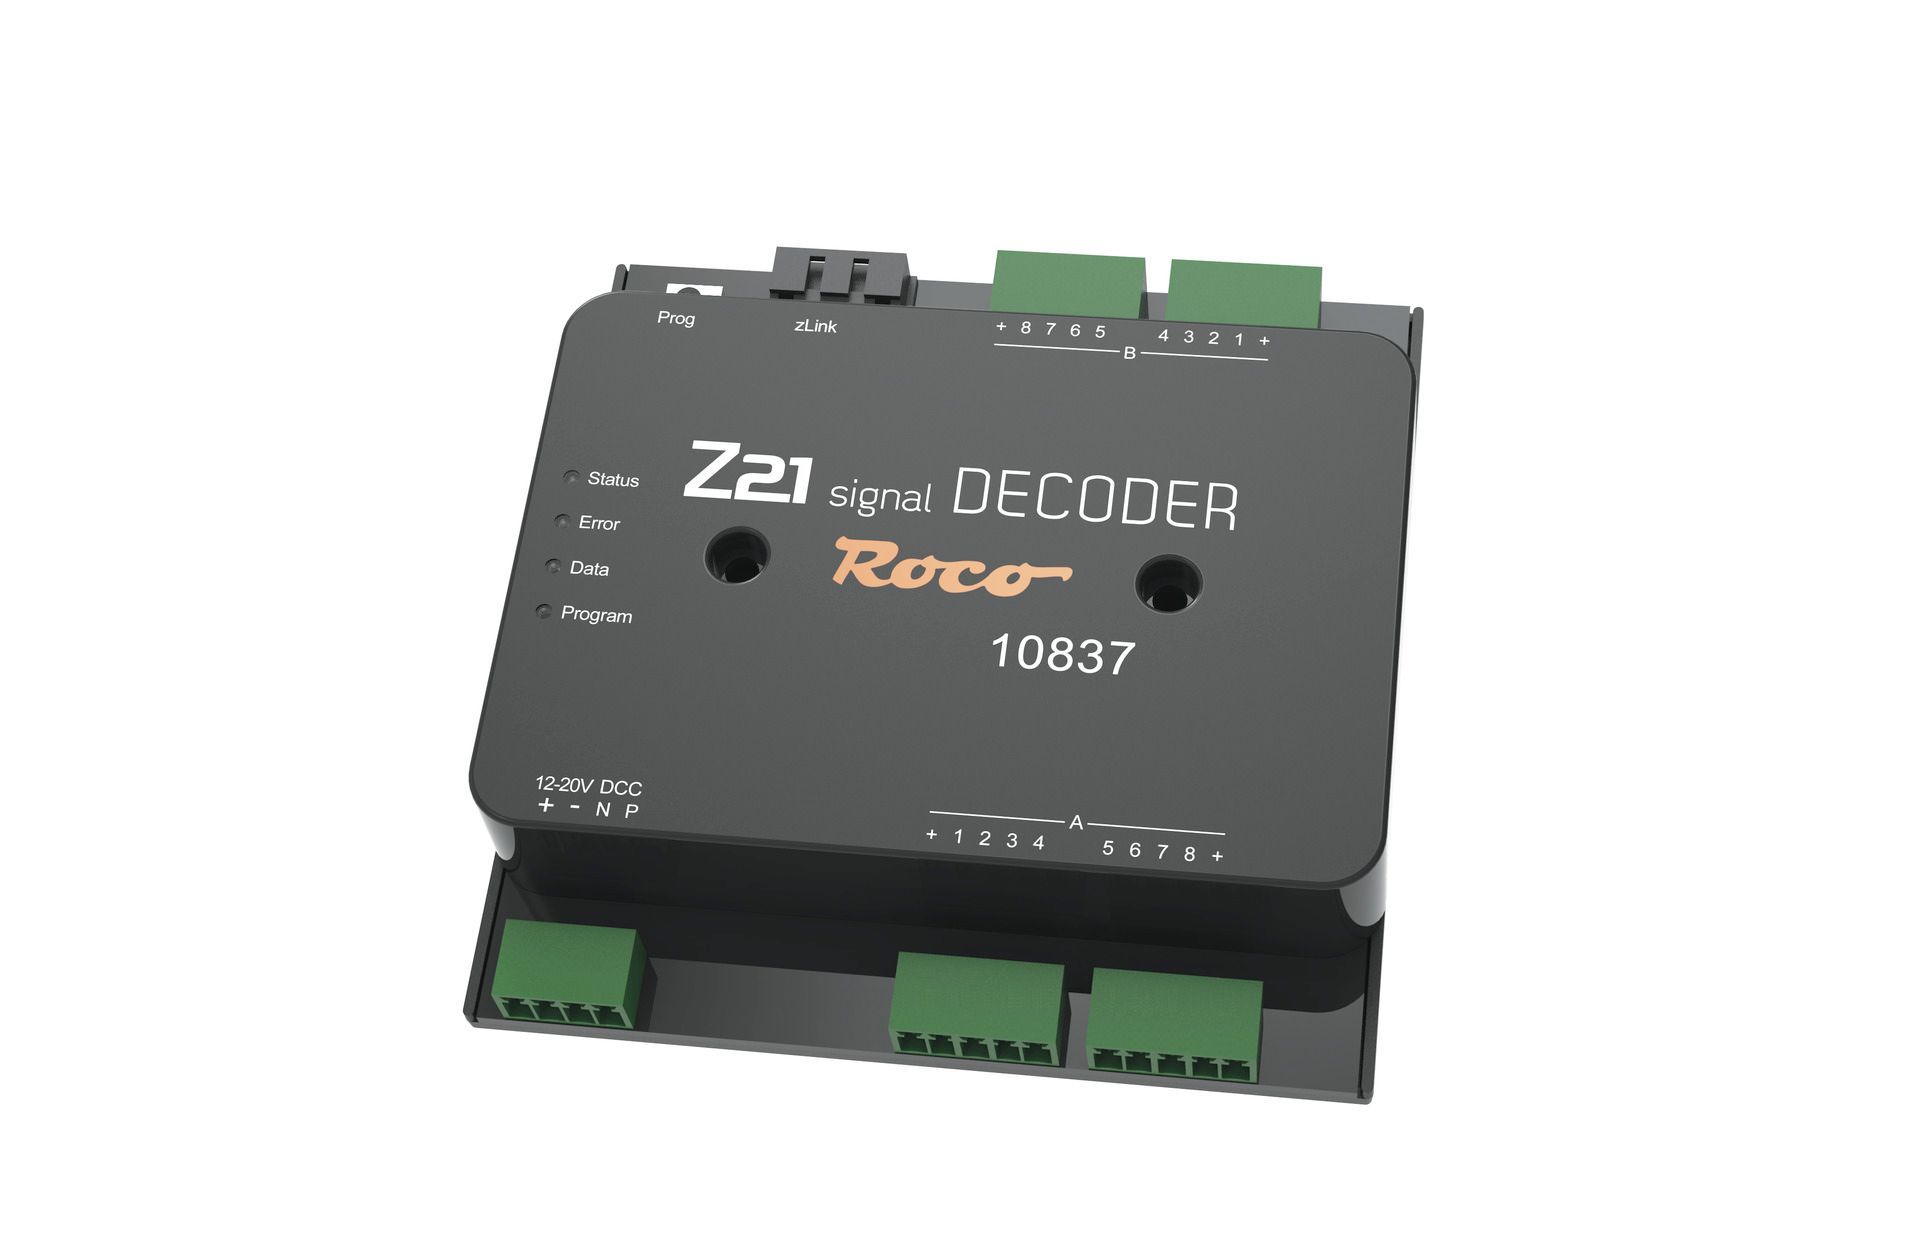 Roco 10837 - Z21 signal Decoder